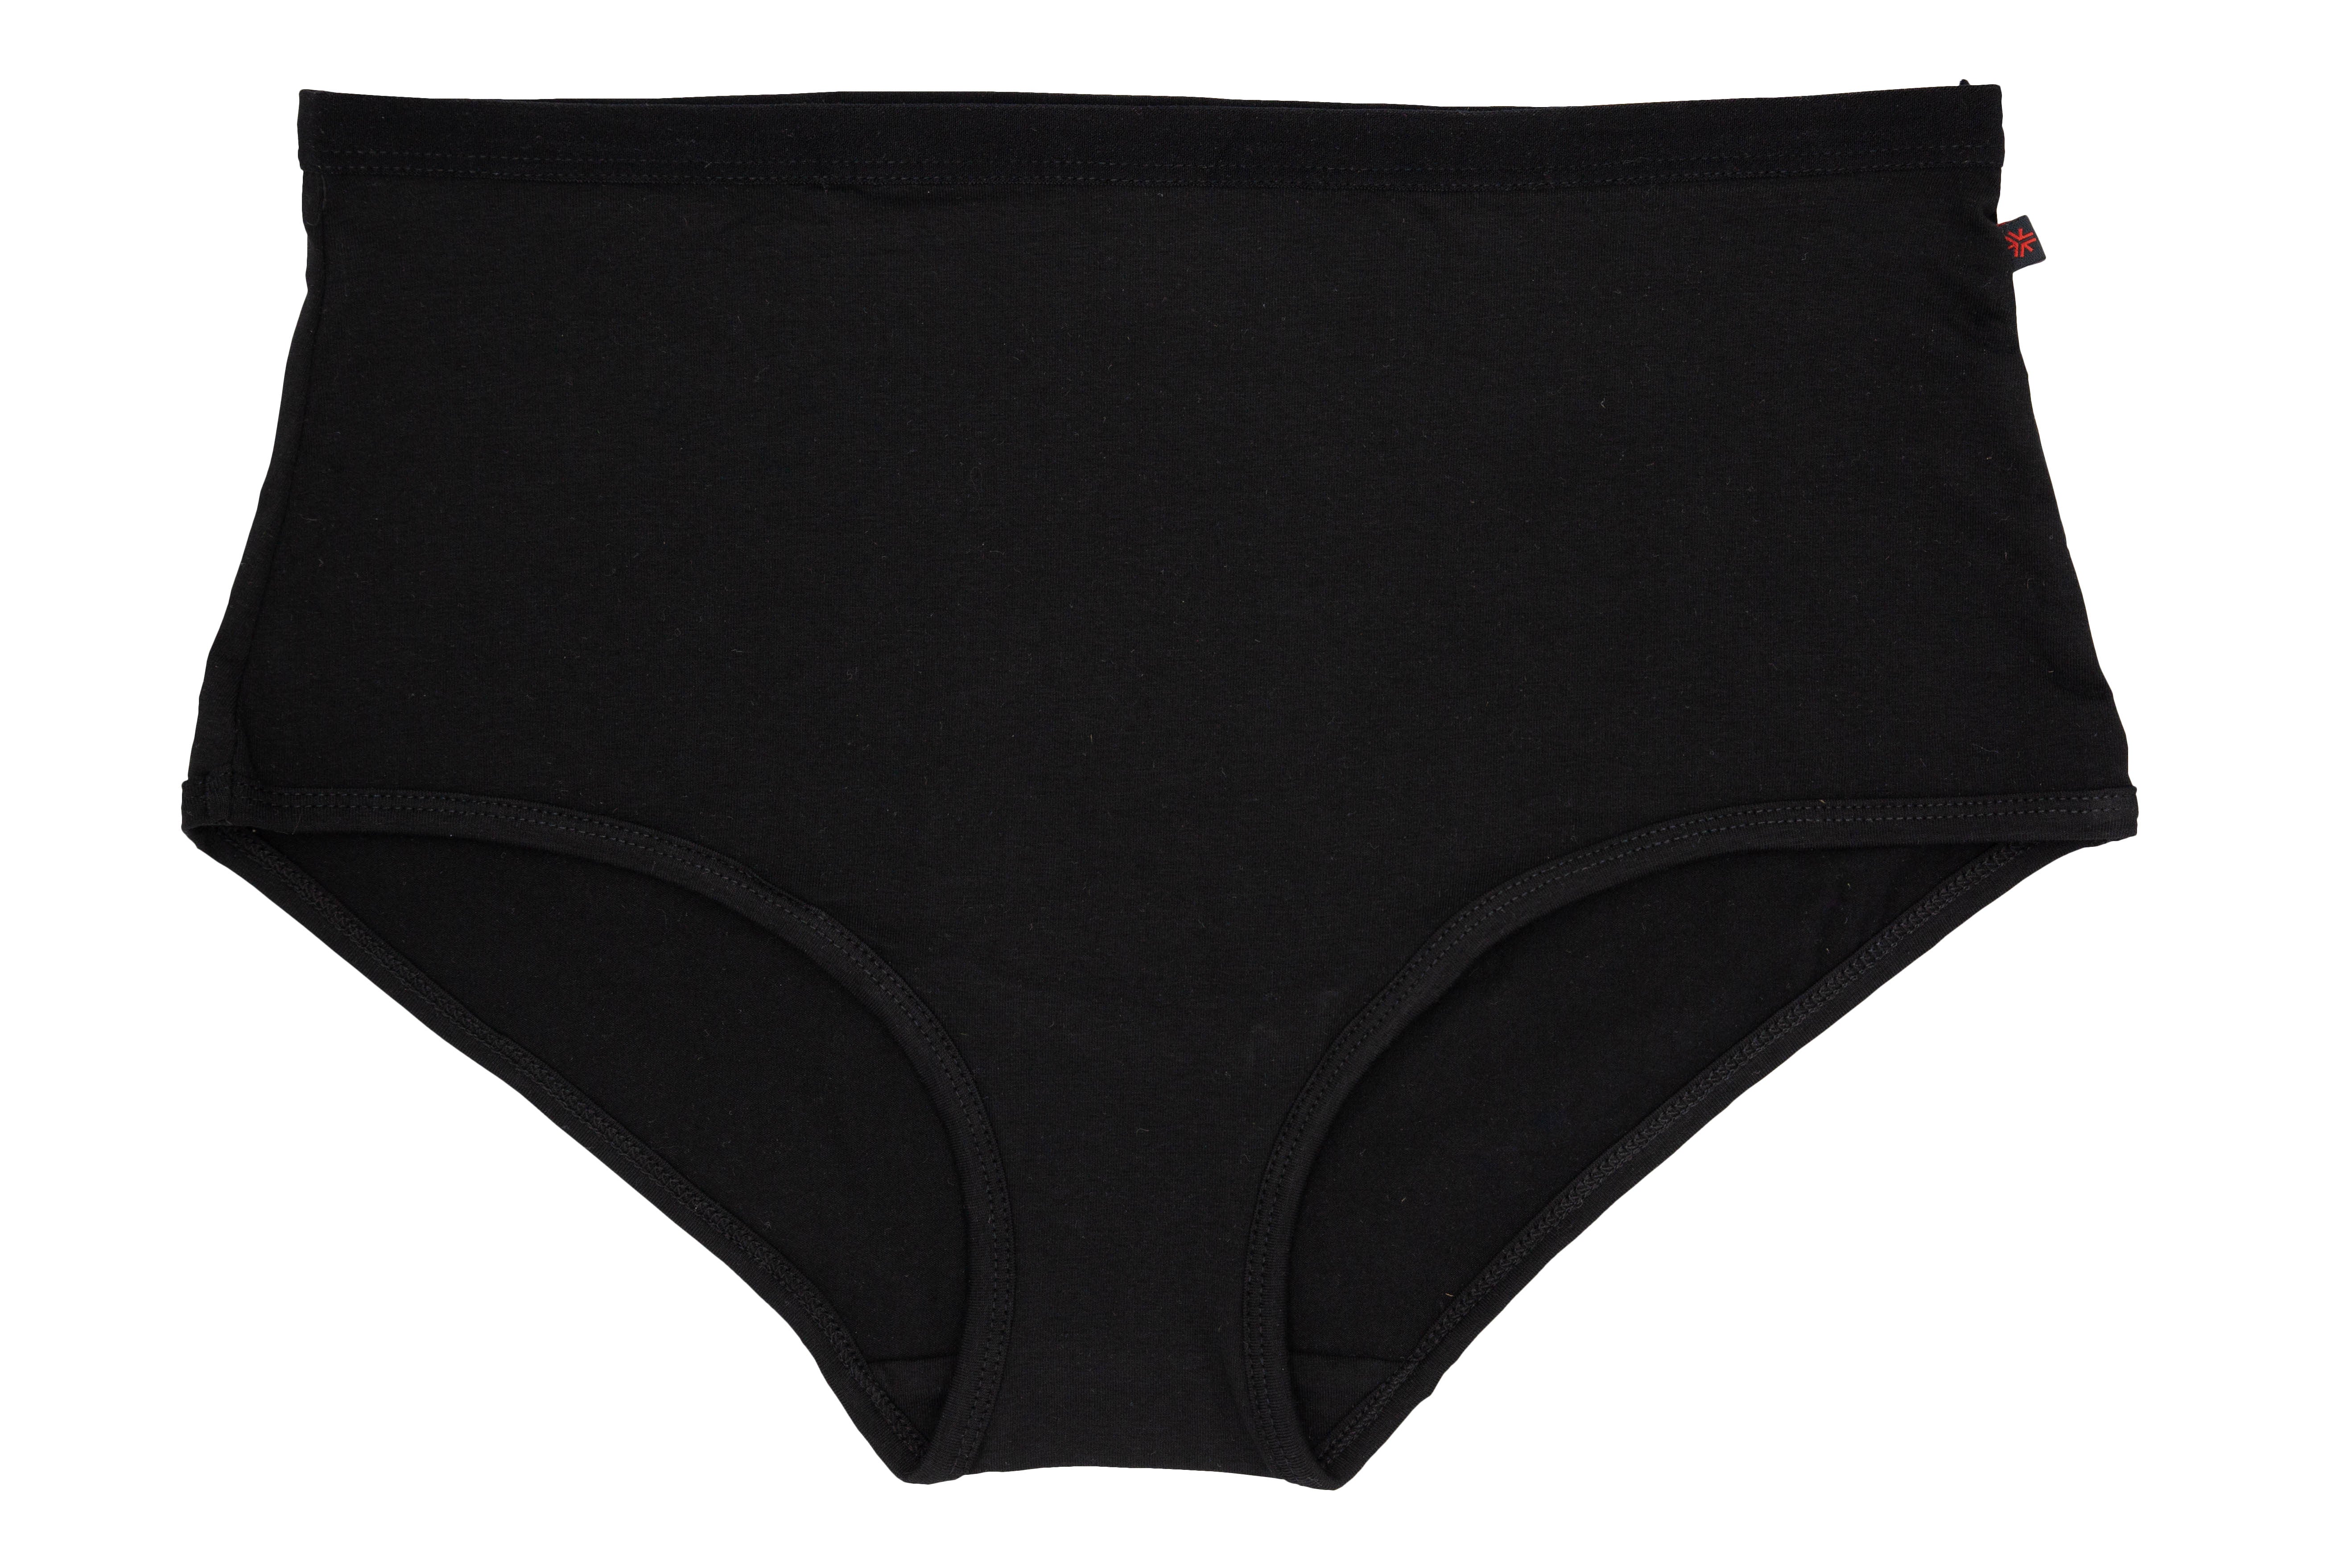 Black Organic Cotton Women's Ethical Underwear